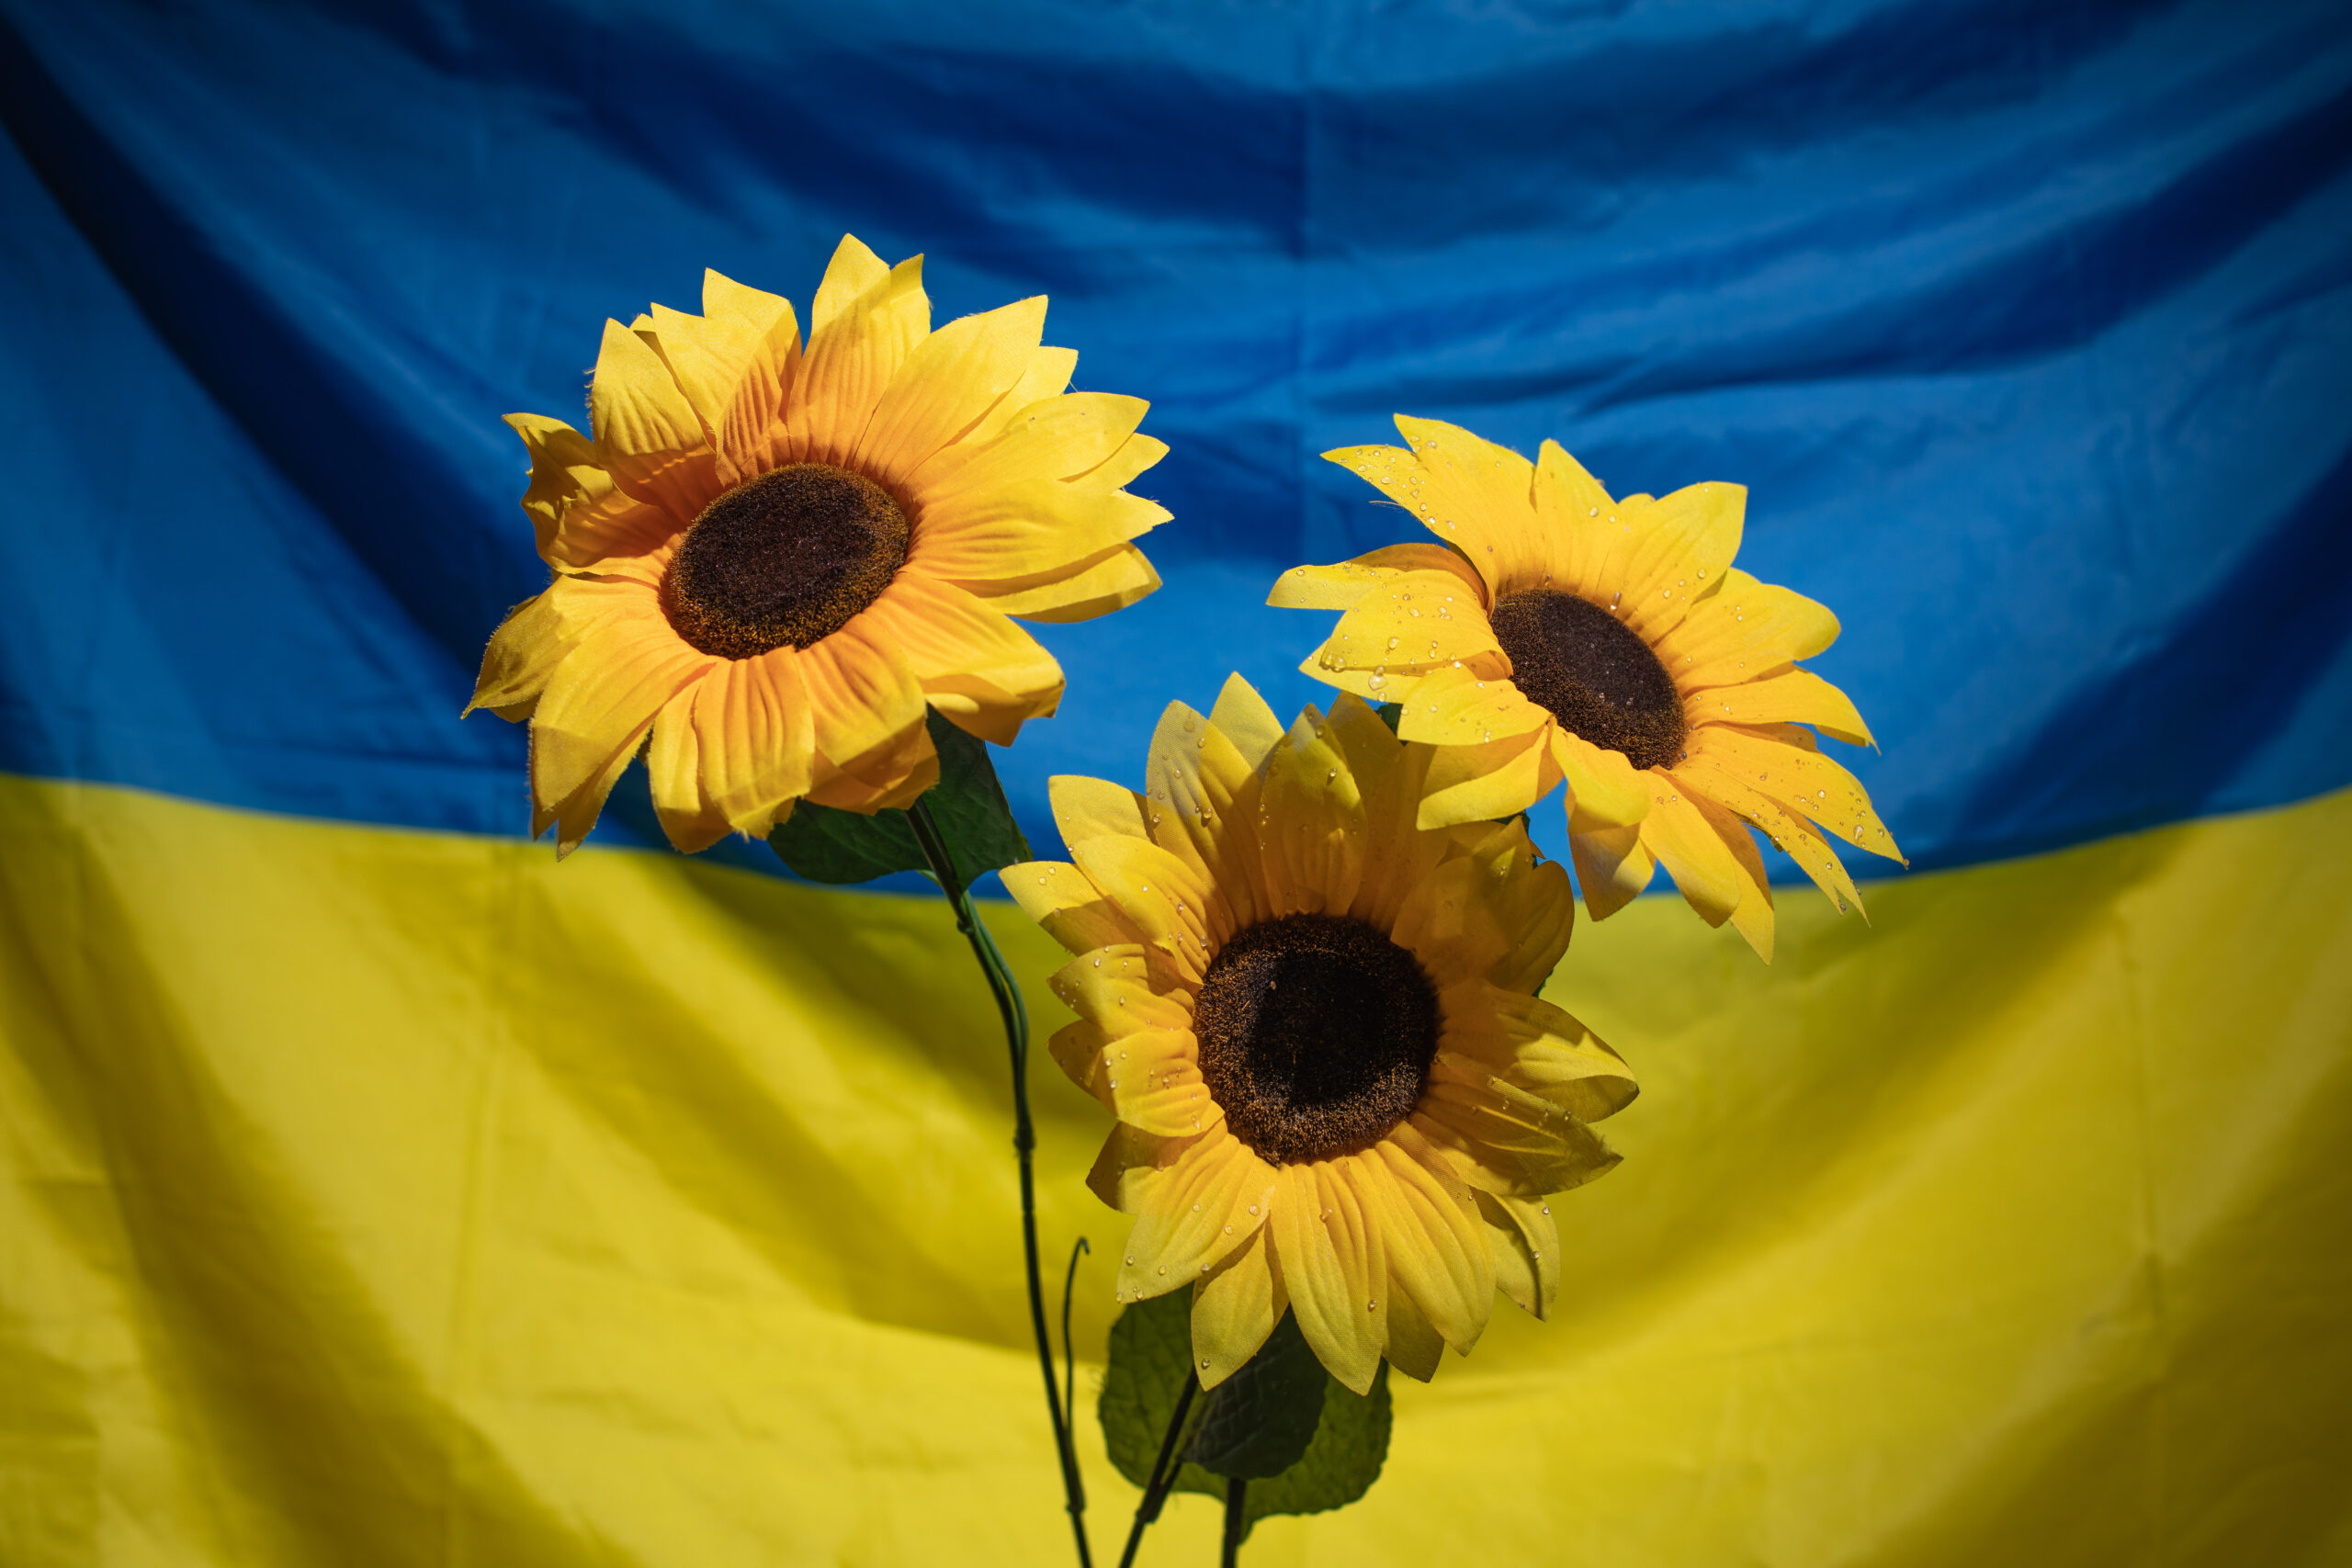 Eine blau-gelbe Ukraine Flagge ist im Hintergrund. Davor: drei strahlende Sonnenblumen